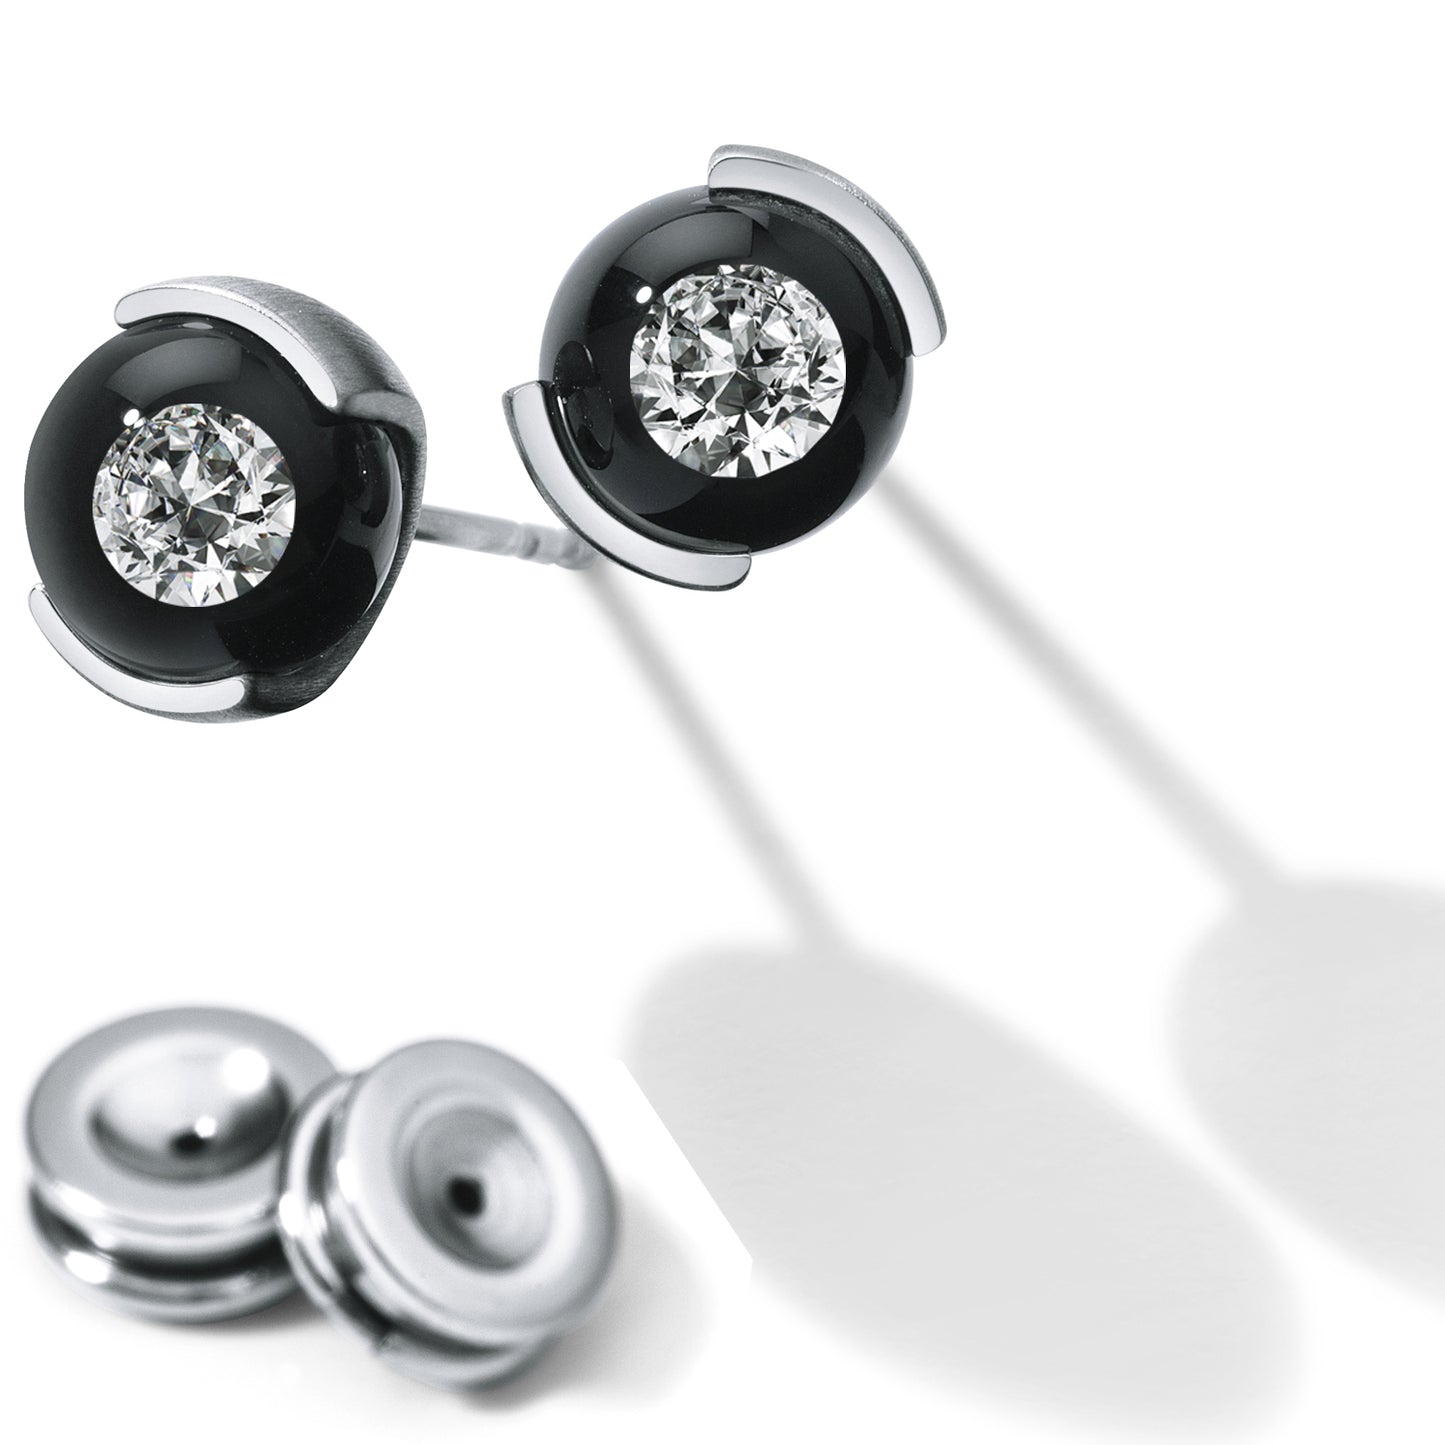 Diamantohrstecker DIAMOND IN GLASS, Brillanten 0,06 oder 0,10 ct. TW VS, KUGELINA Edelstahl 8 mm Kugel